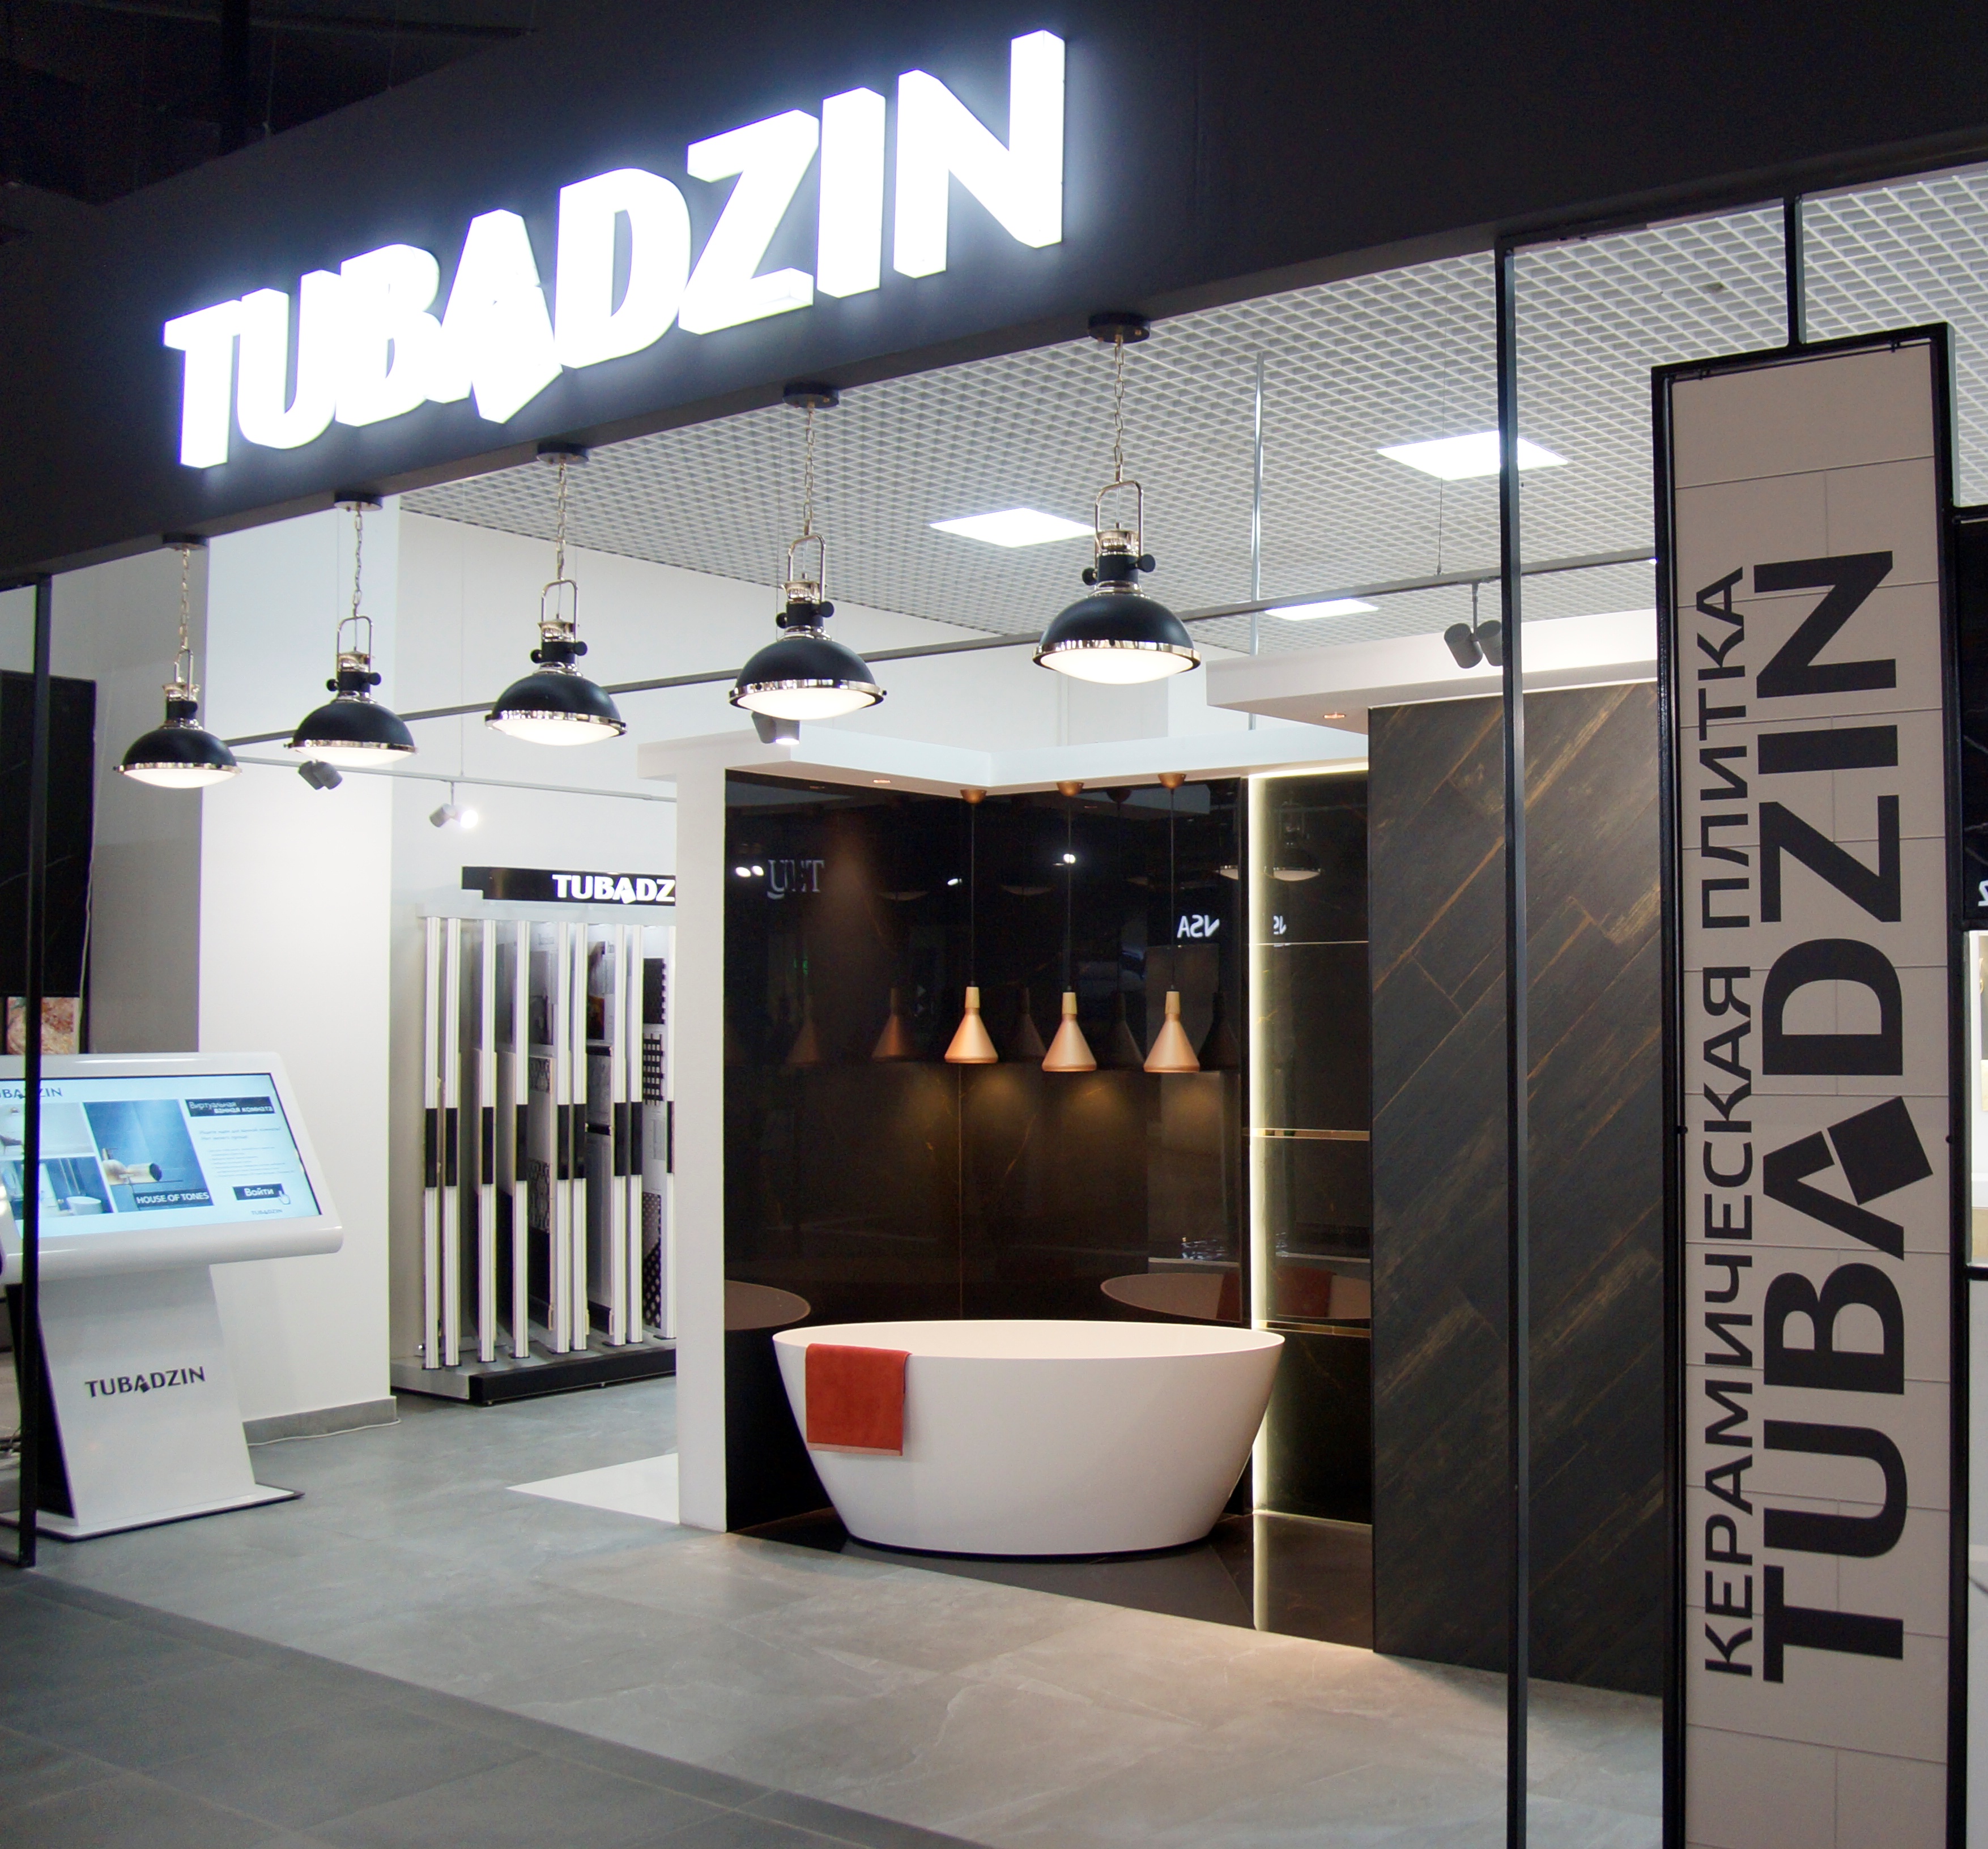 Выставочный зал Tubadzin